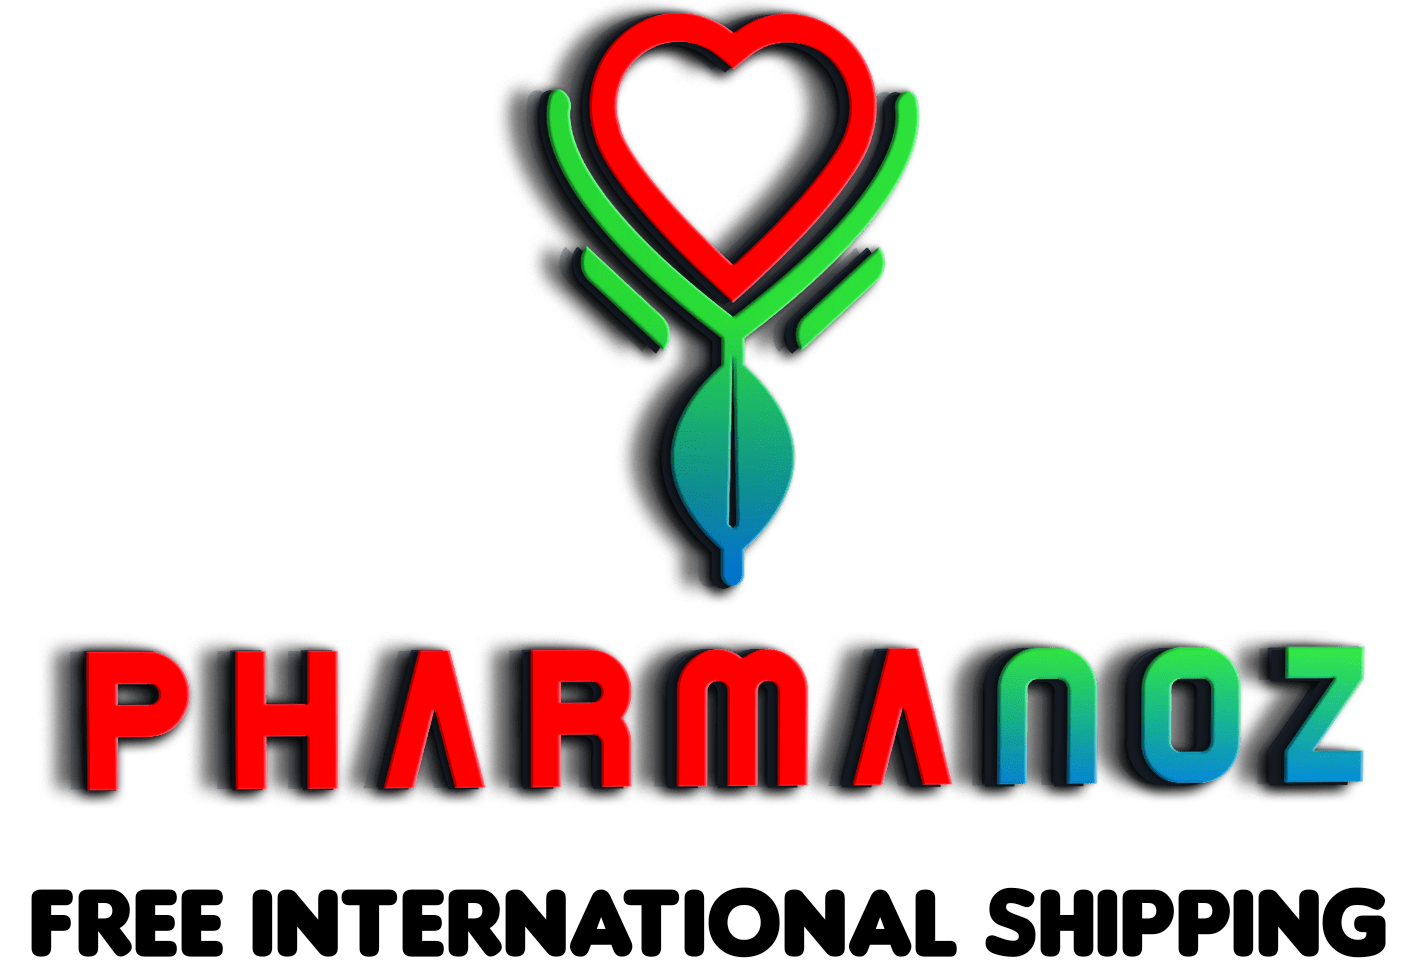 PharmaNoz.com